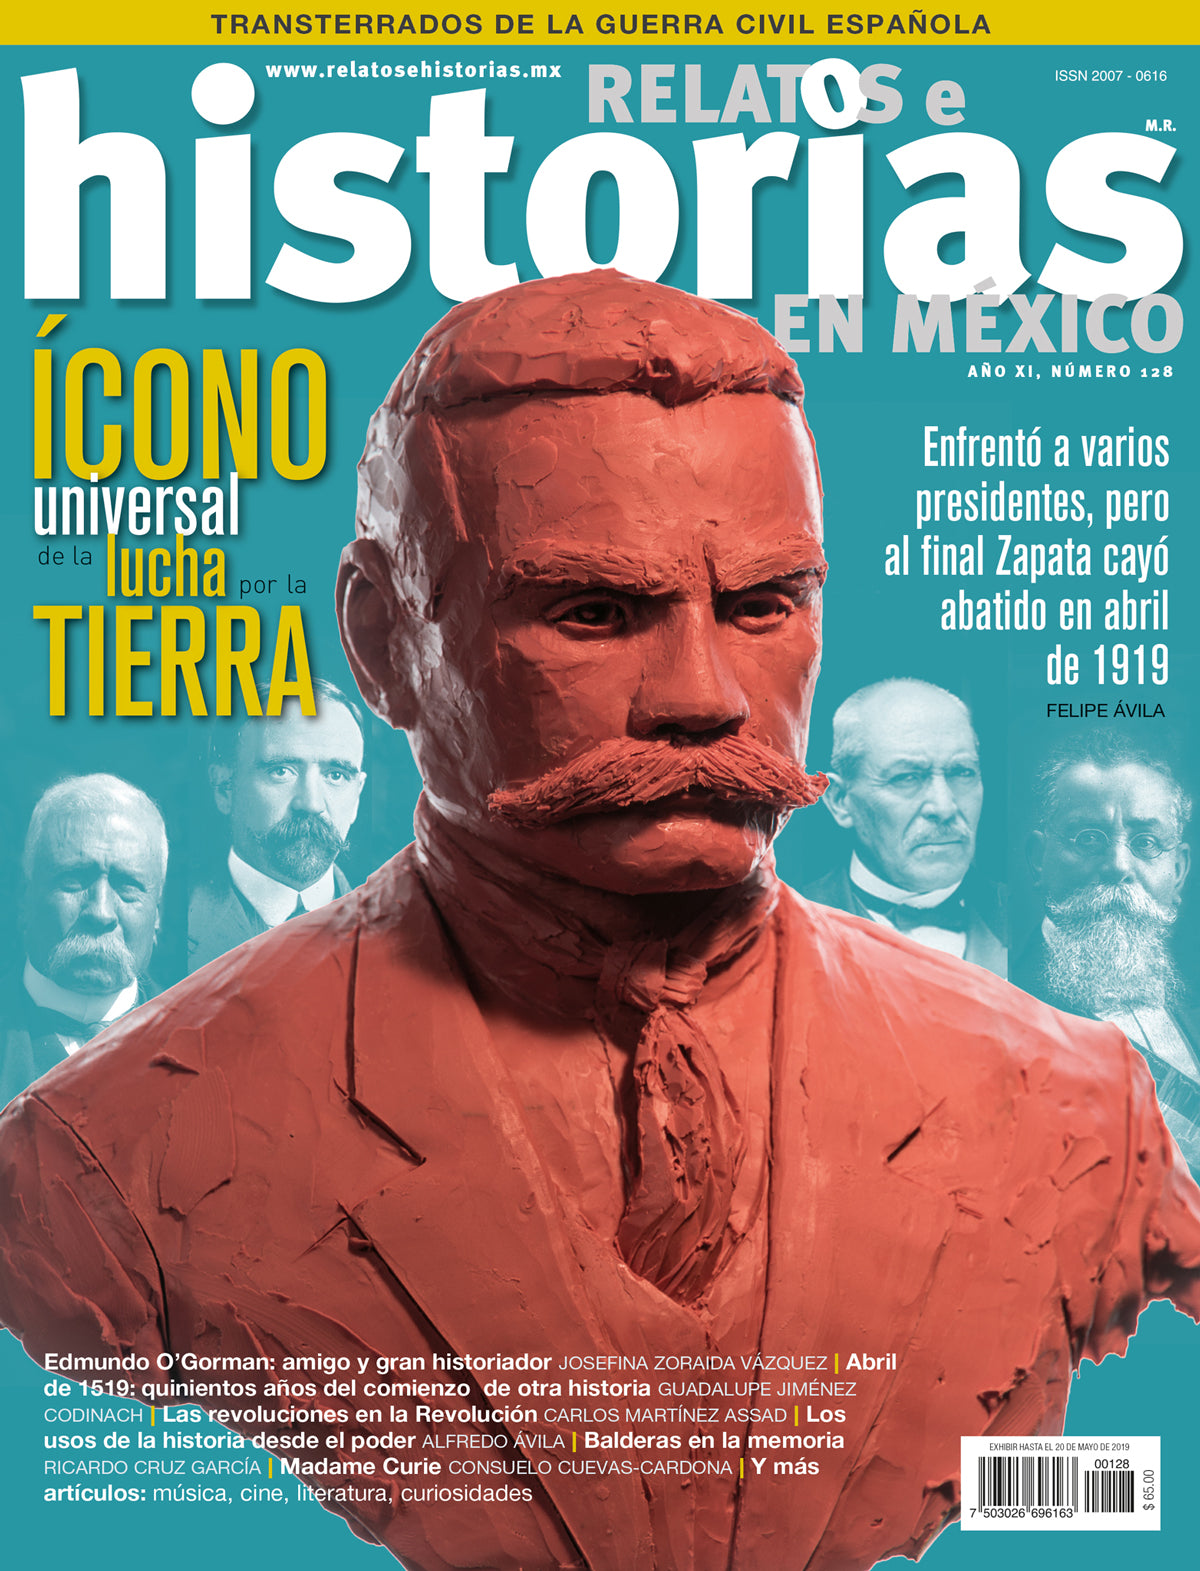 A cien años del asesinato de Zapata